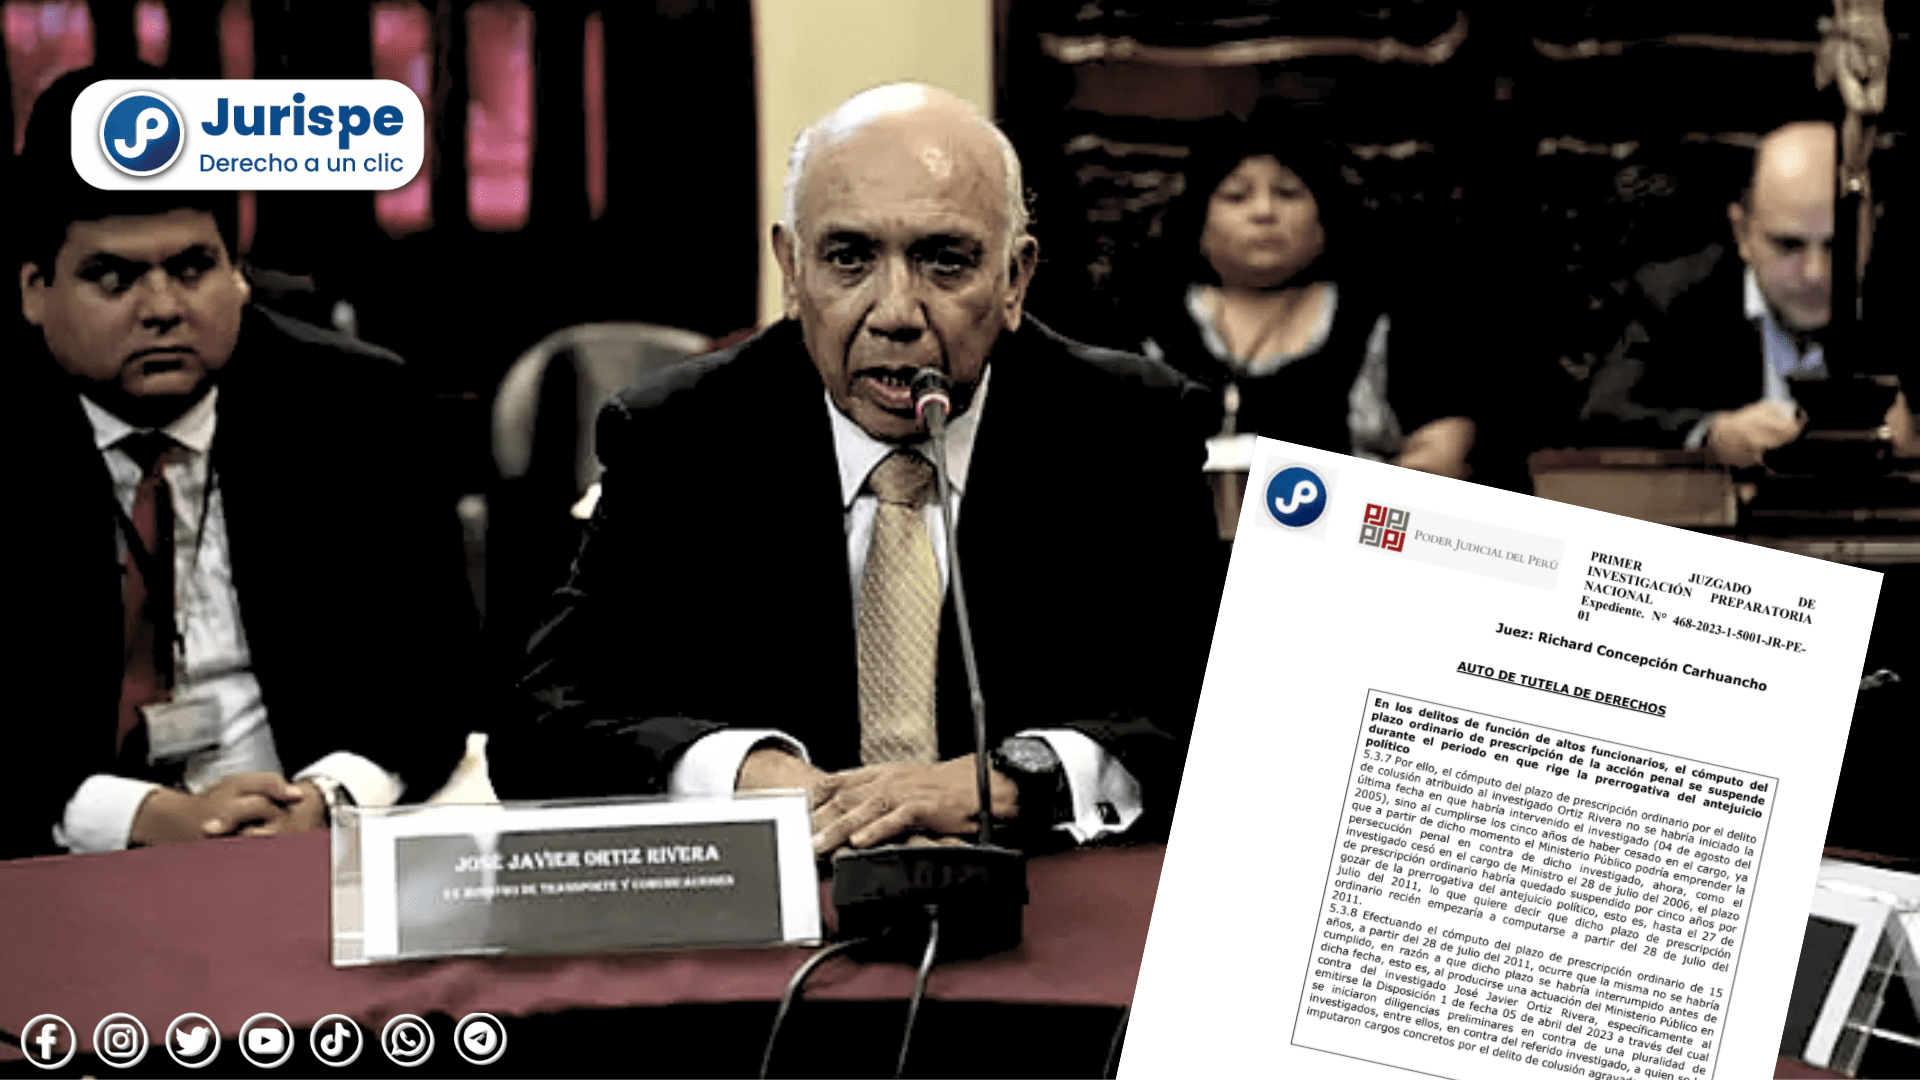 PJ: Declaran infundada tutela de derechos de José Ortiz Rivera (exministro de Alejandro Toledo)